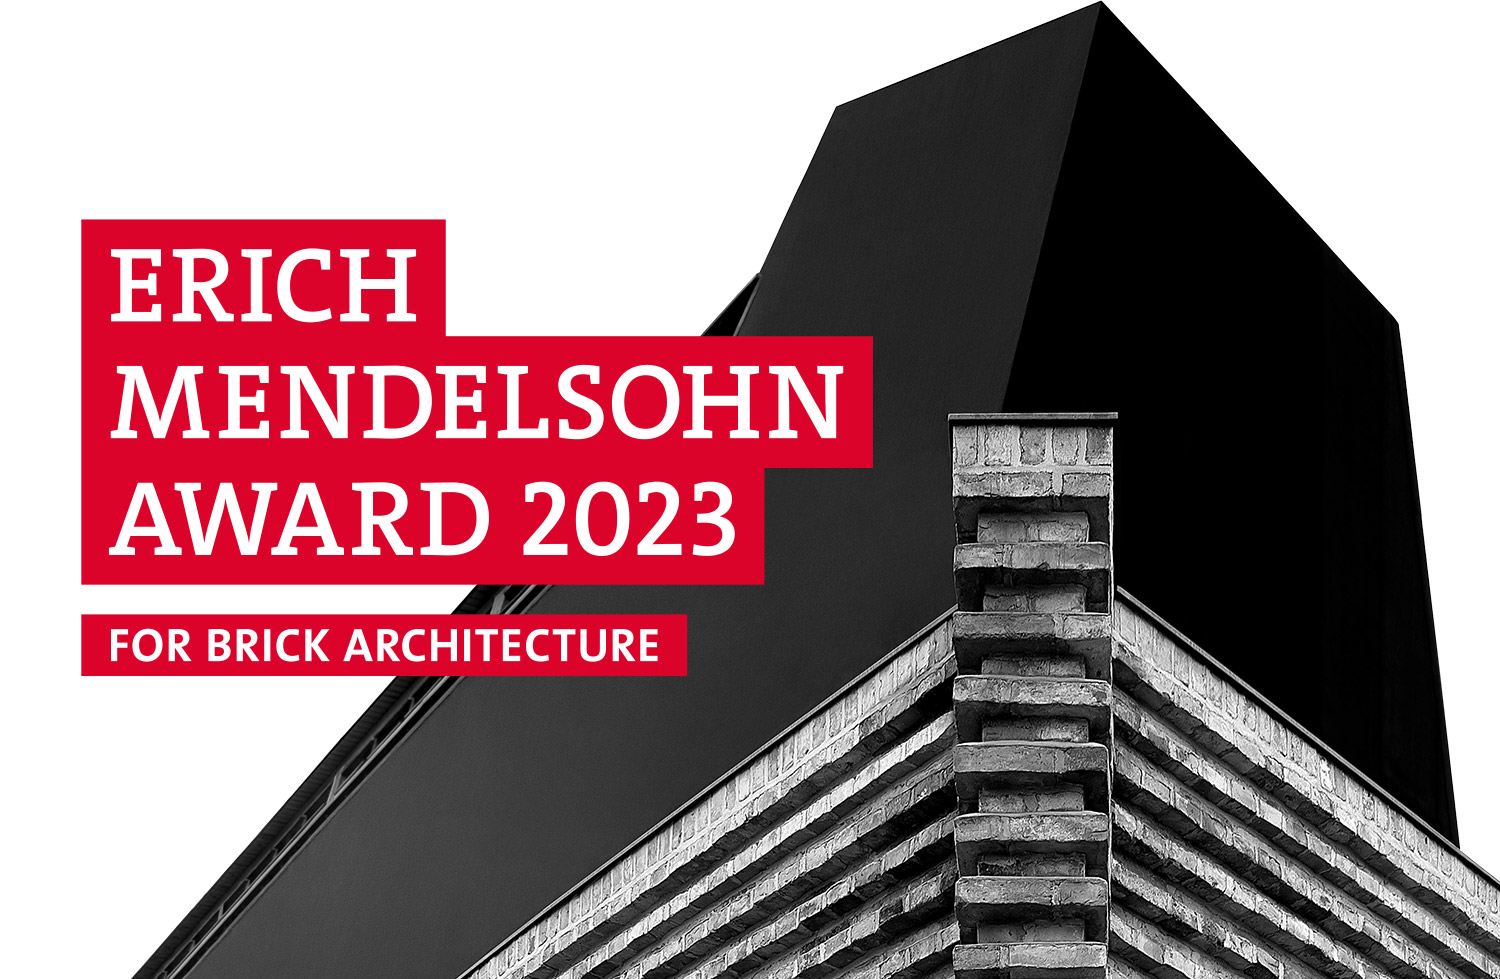 Erich Mendelsohn Award 2023